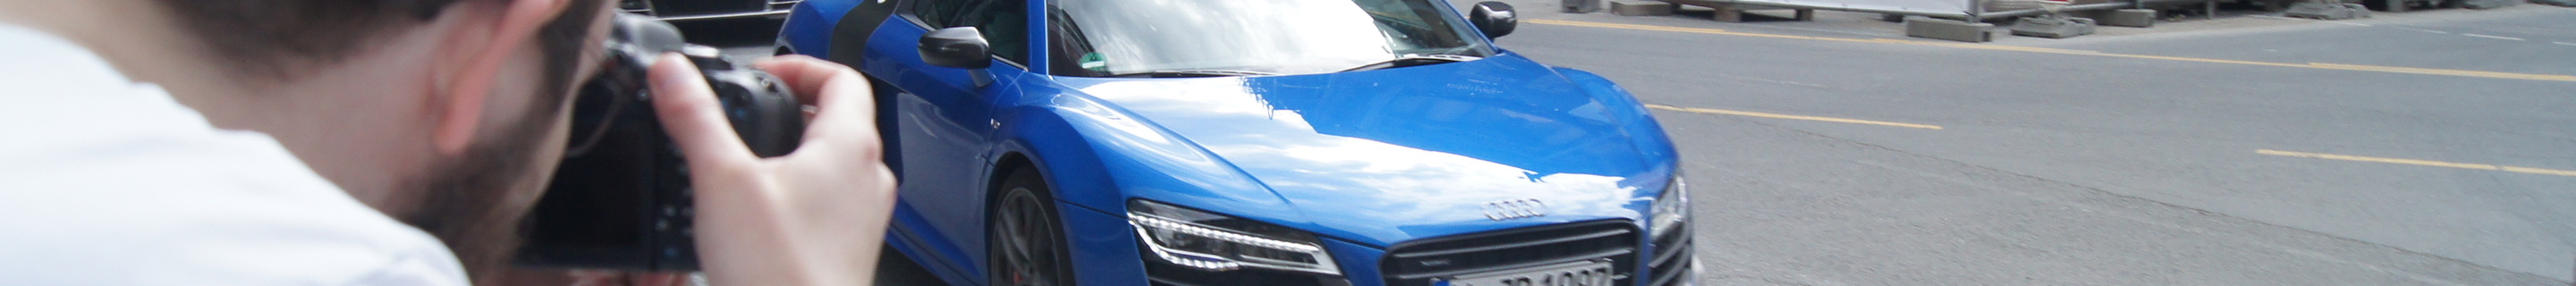 Audi R8 V10 LMX